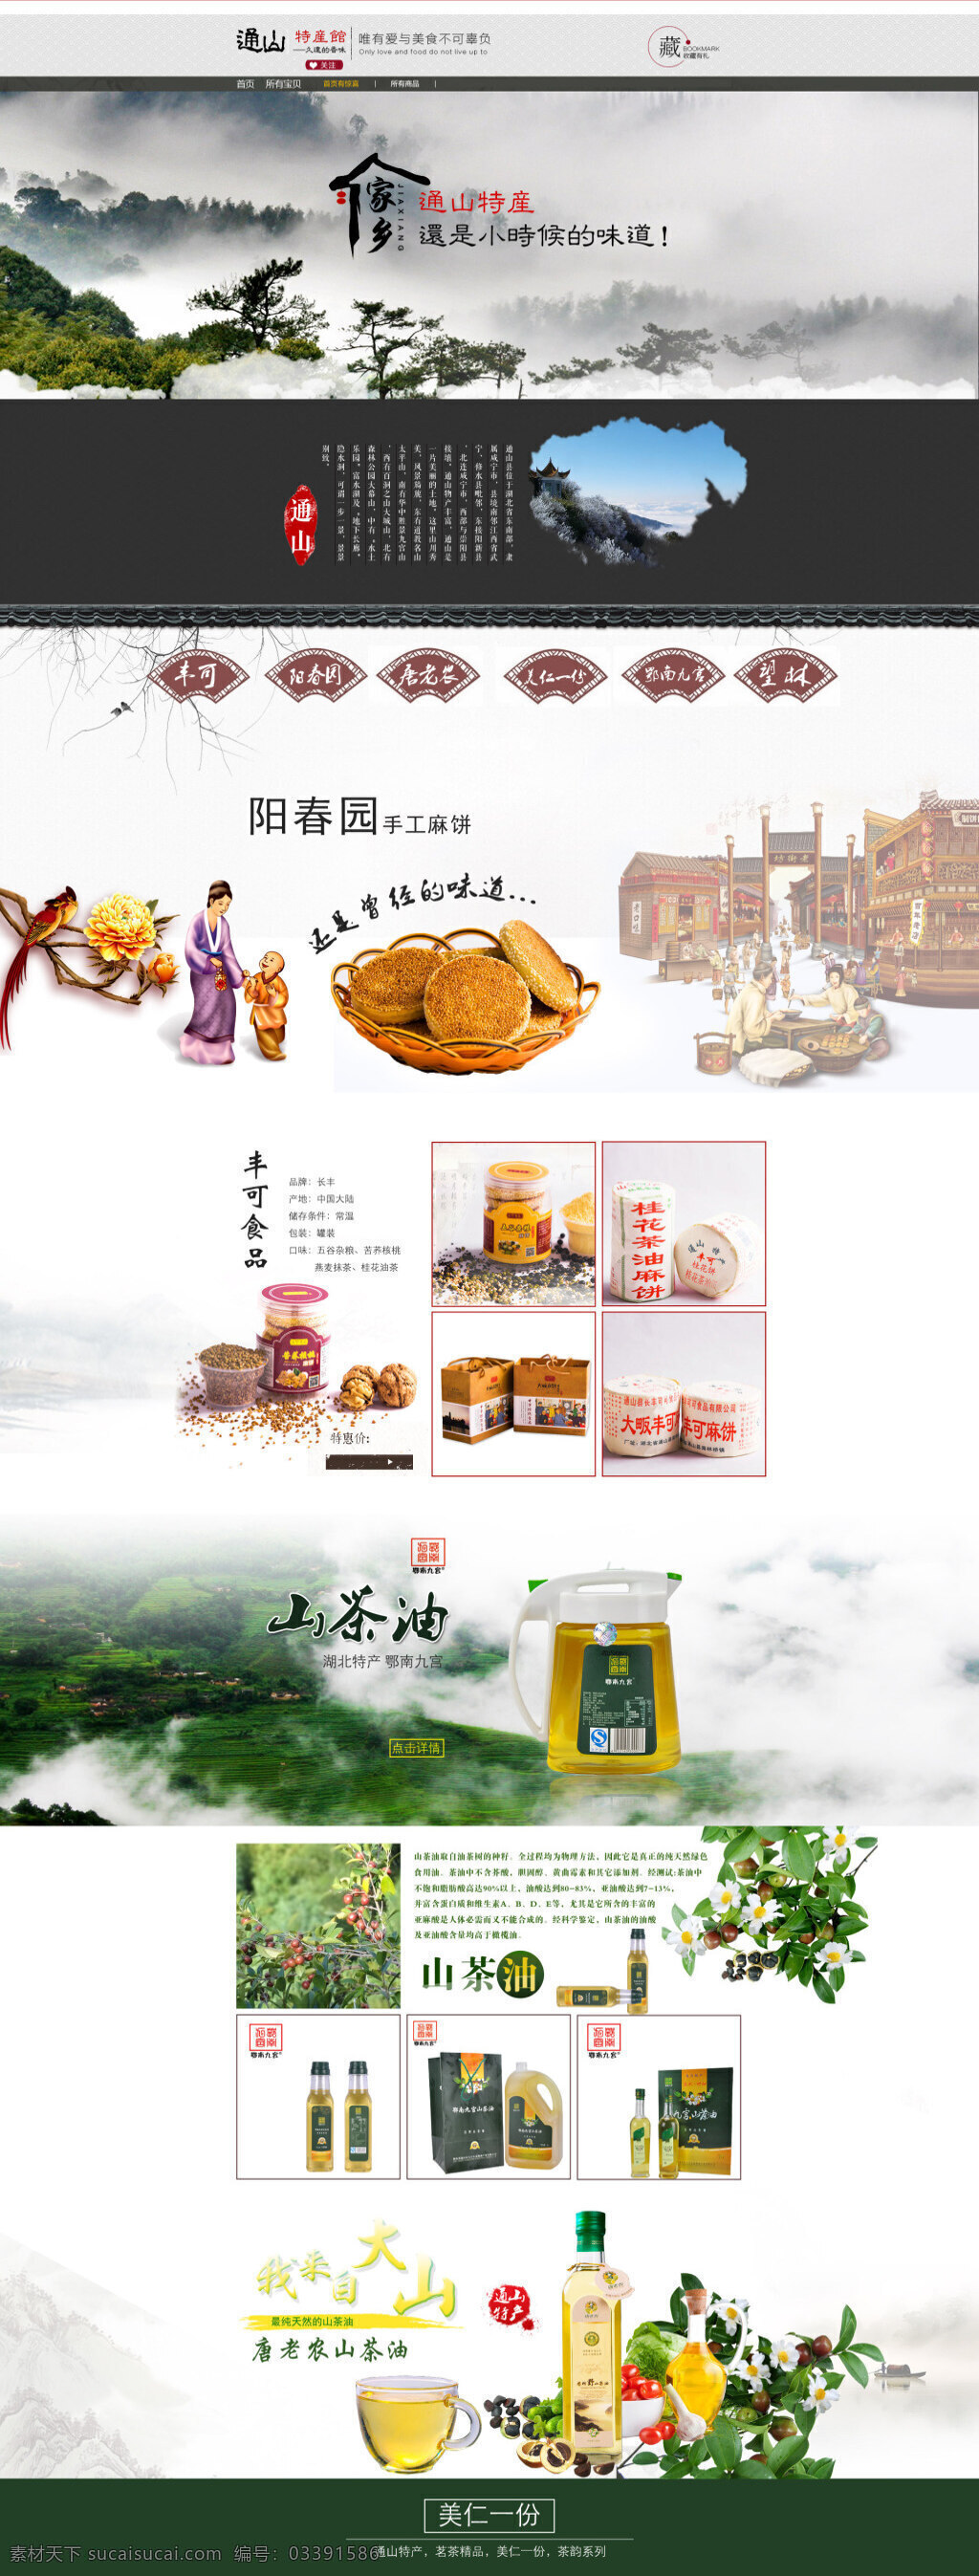 京东 传统 地方特产 首页 主页 山茶 油酥 饼 食品 古典 风格 网店 淘宝